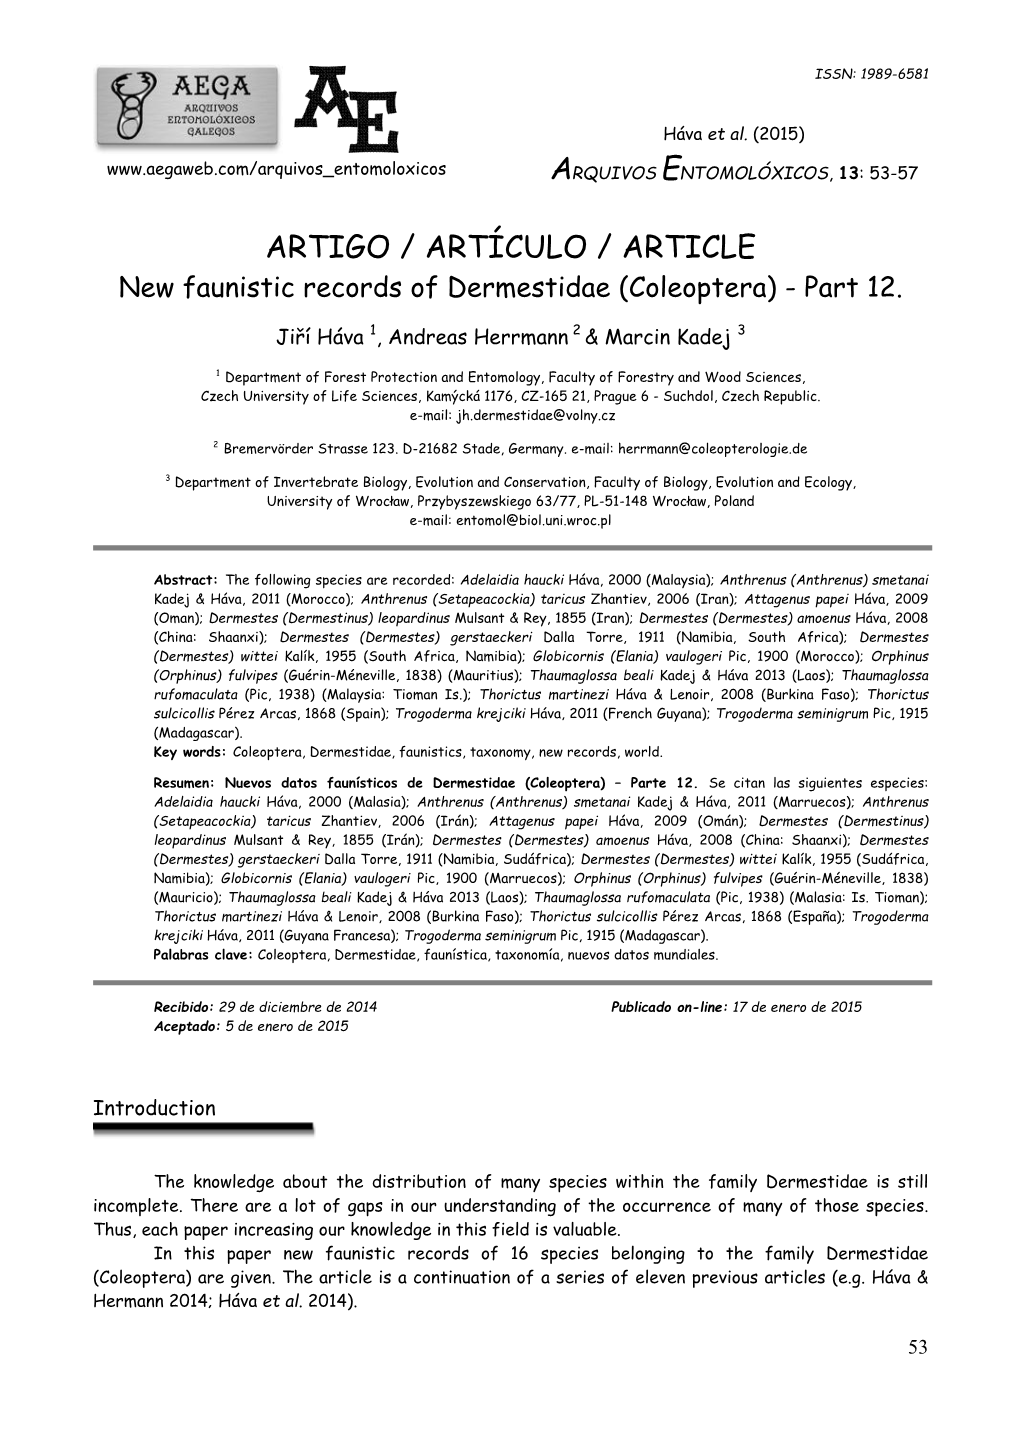 ARTIGO / ARTÍCULO / ARTICLE New Faunistic Records of Dermestidae (Coleoptera) - Part 12